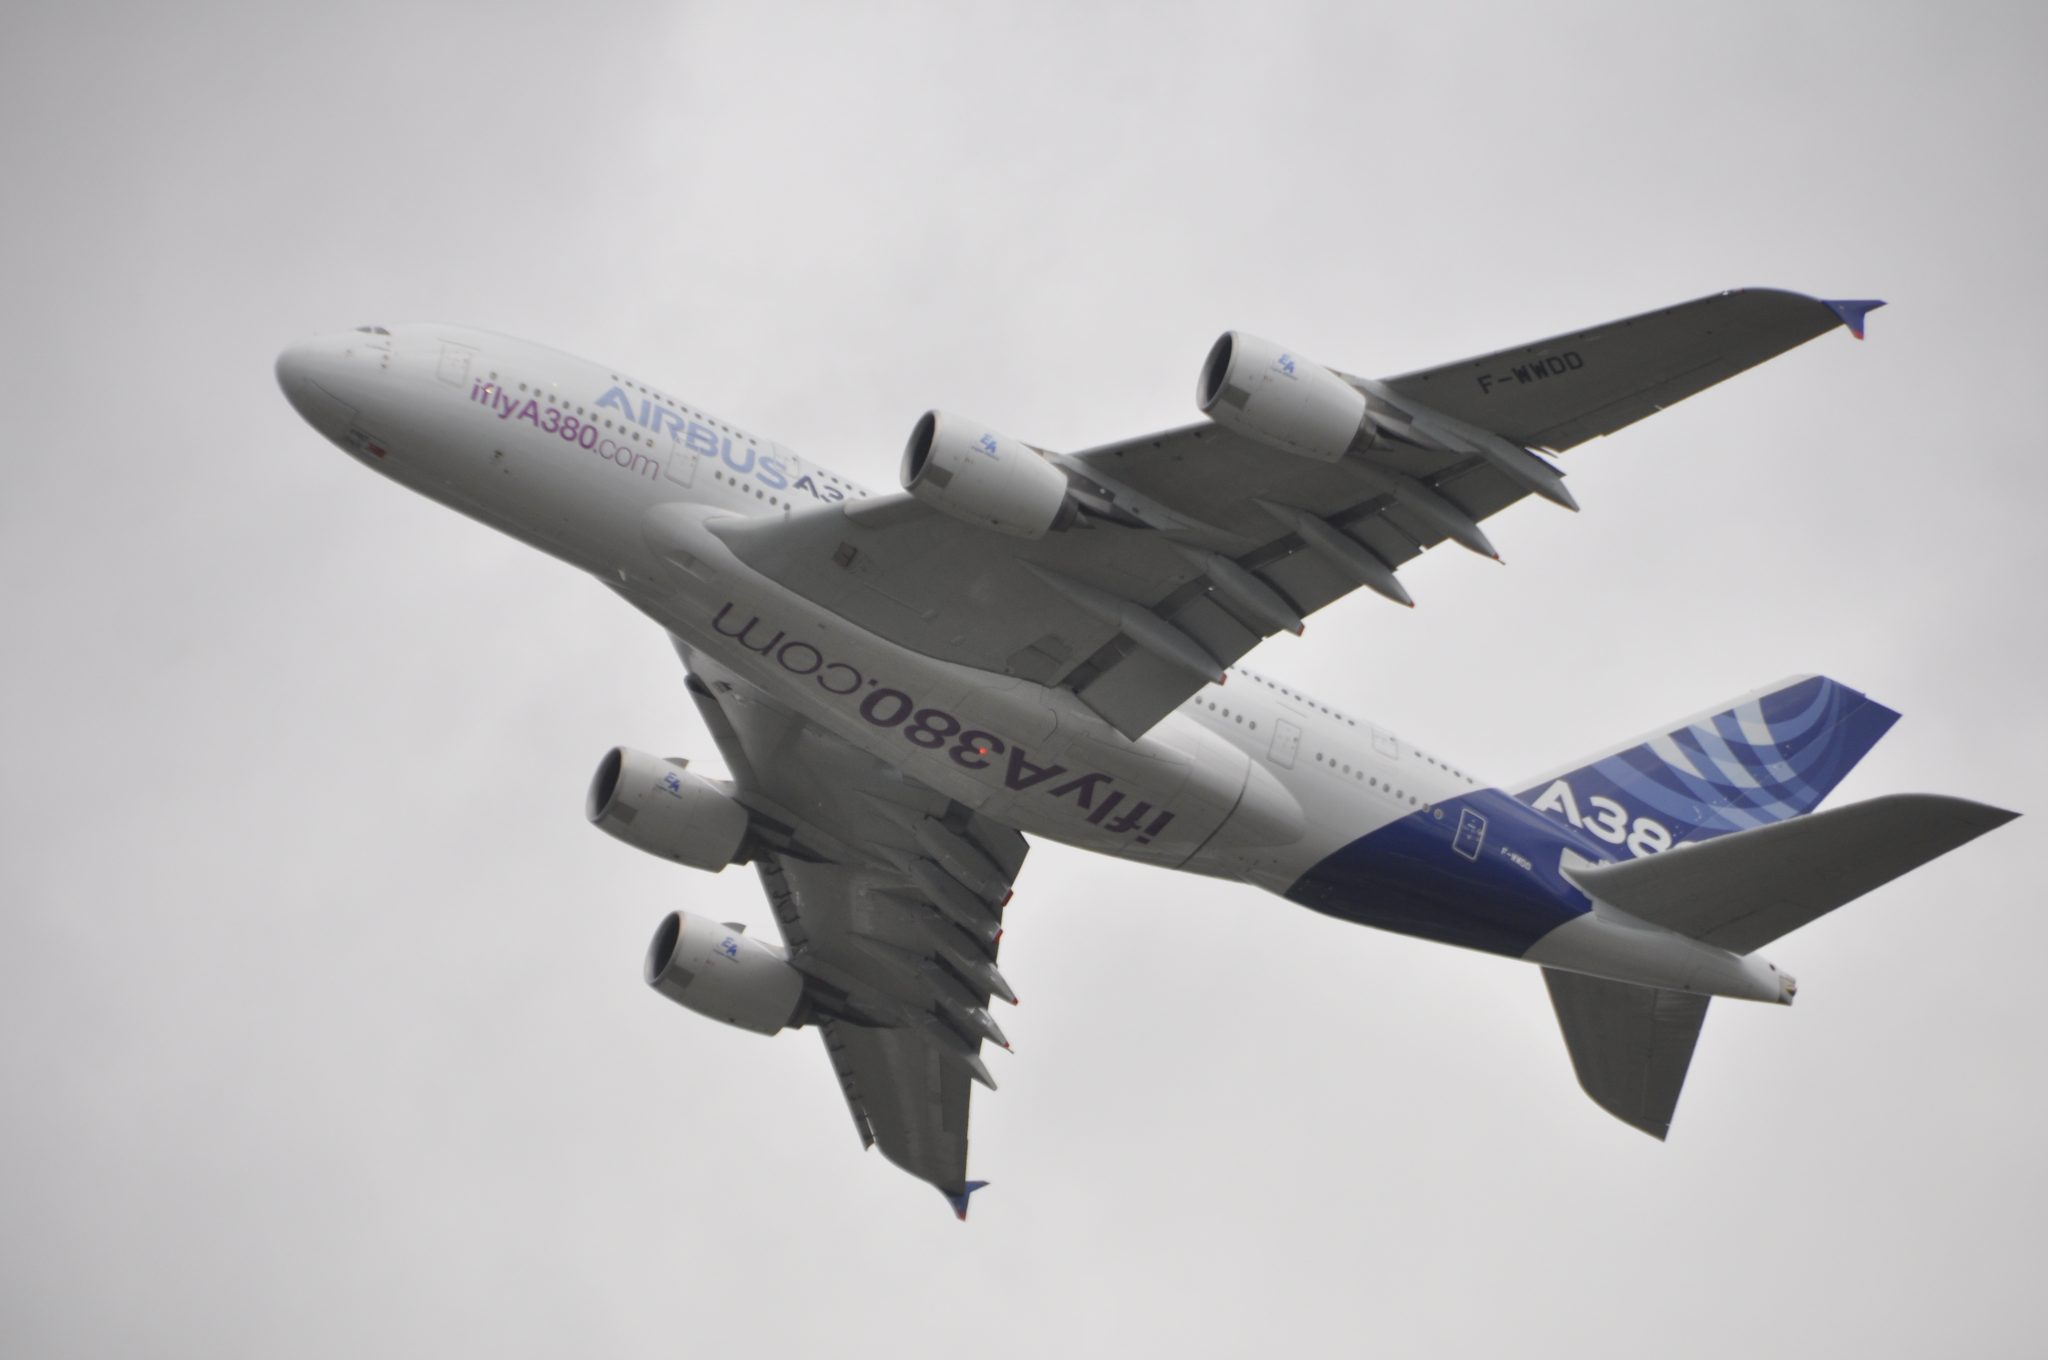 Airbus announces senior leadership changes